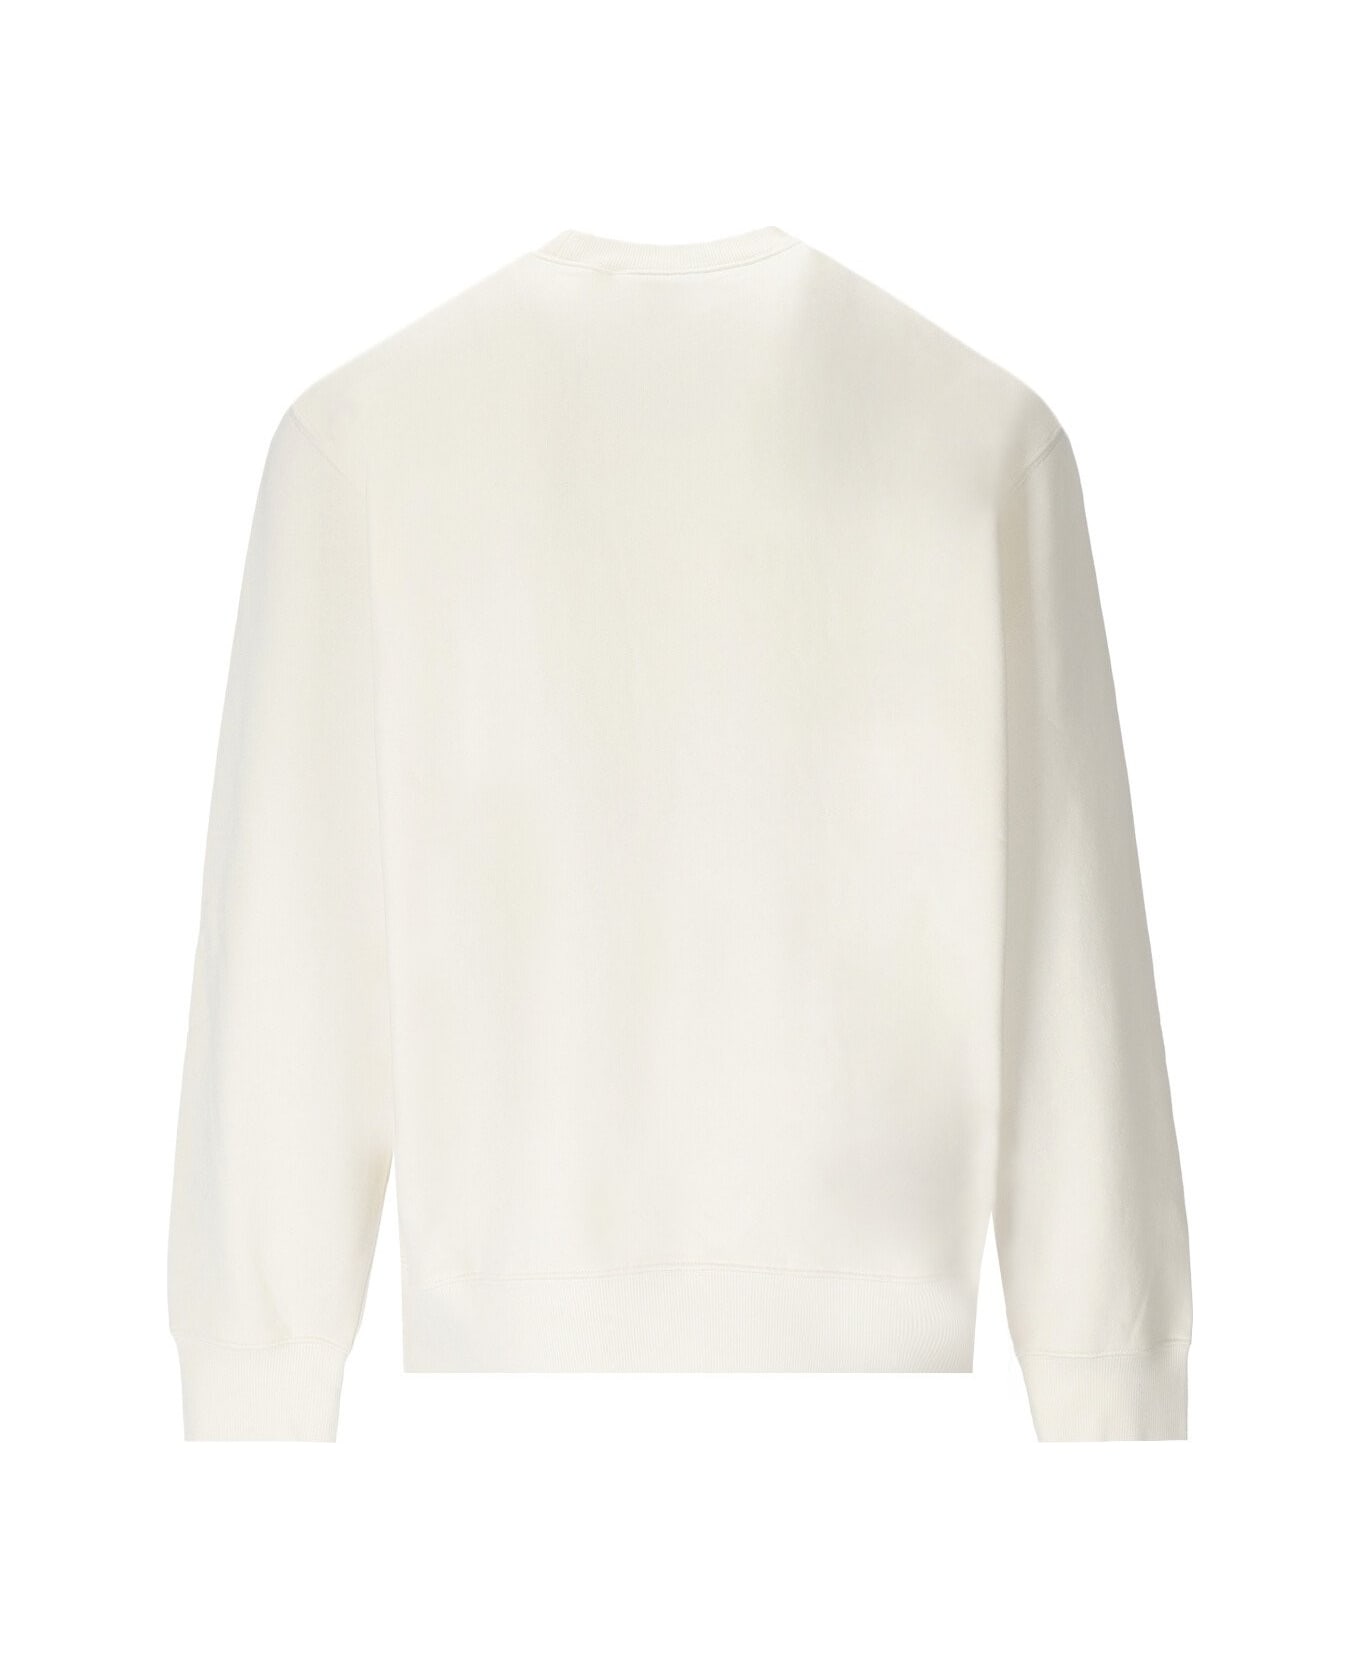 Carhartt Wip Duster Off-white Sweatshirt - WHITE